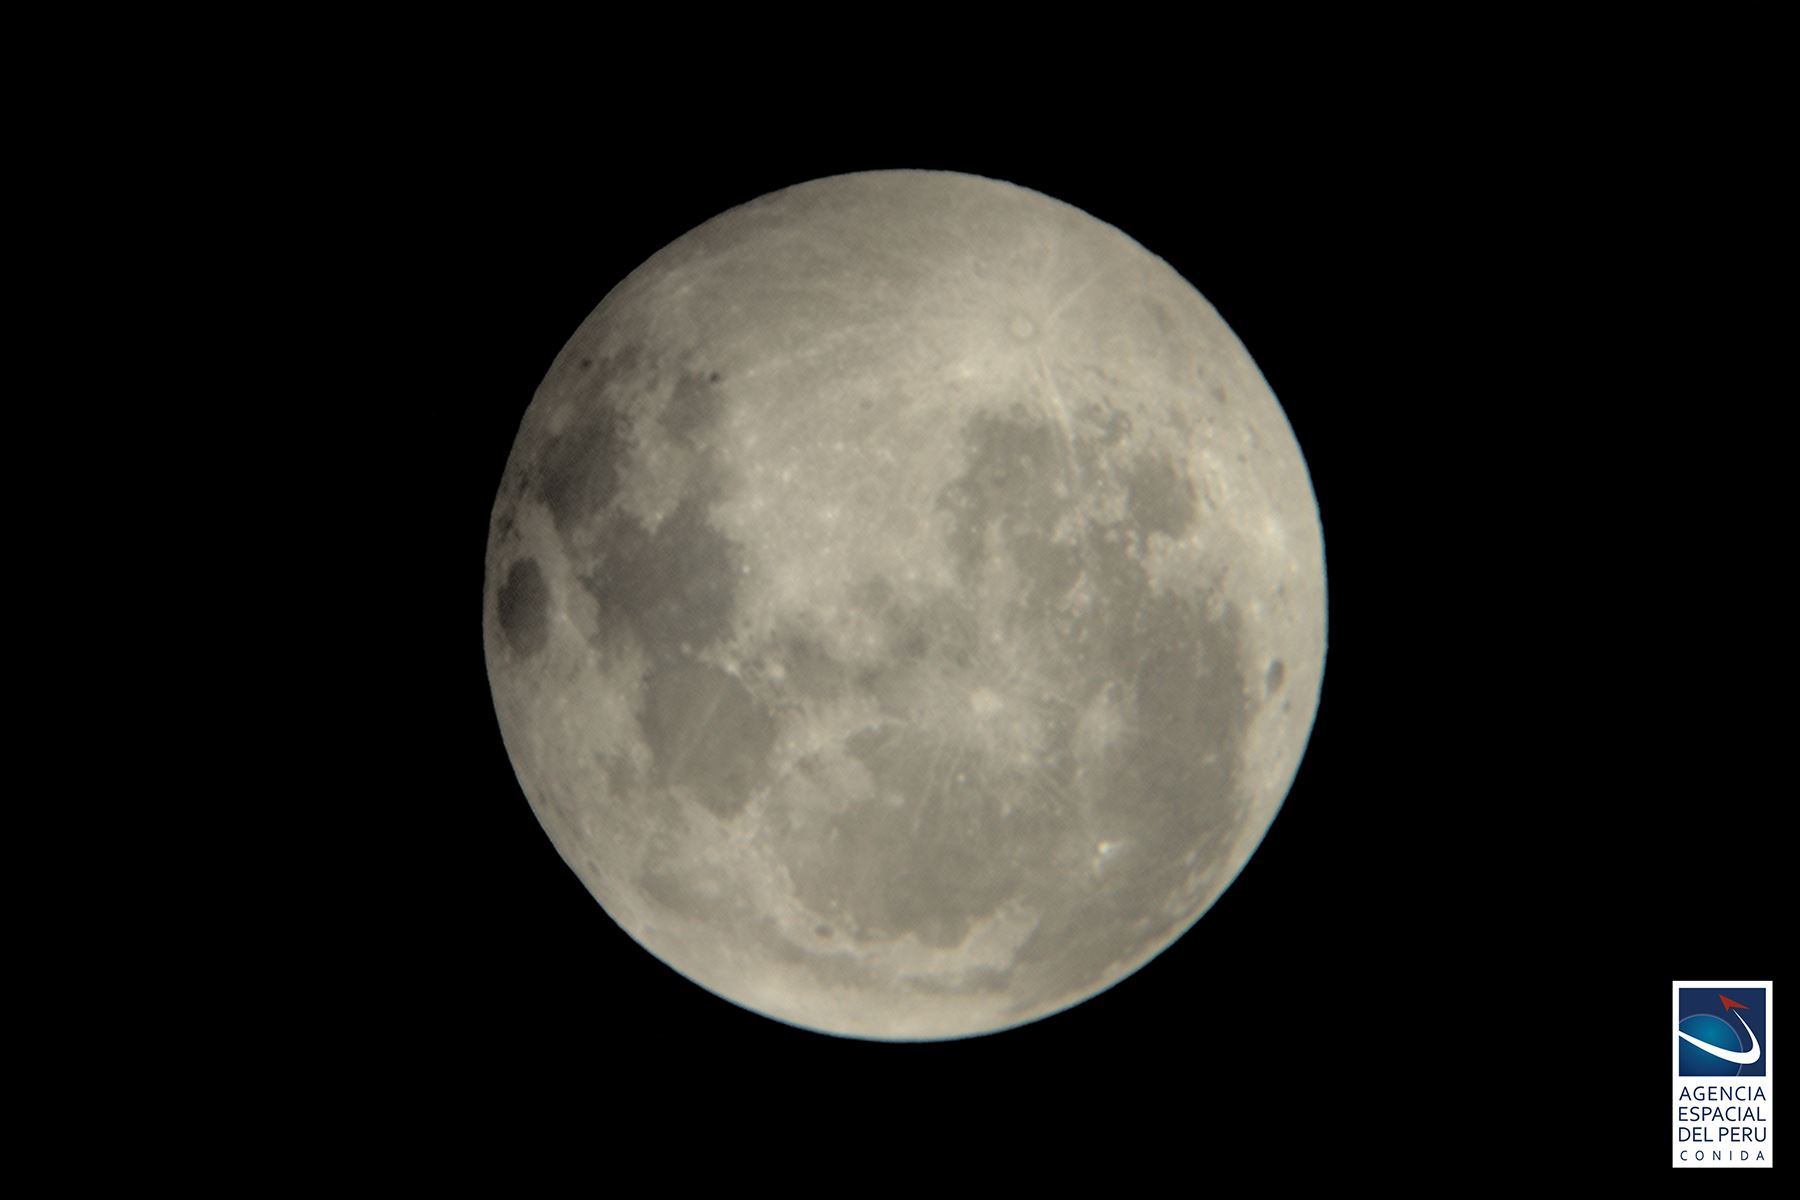 La Luna llena ocurrirá exactamente a las 8:36 pm del 11 de agosto, en la constelación Capricornus, con nuestro satélite natural ubicado a 361412 km de la Tierra.